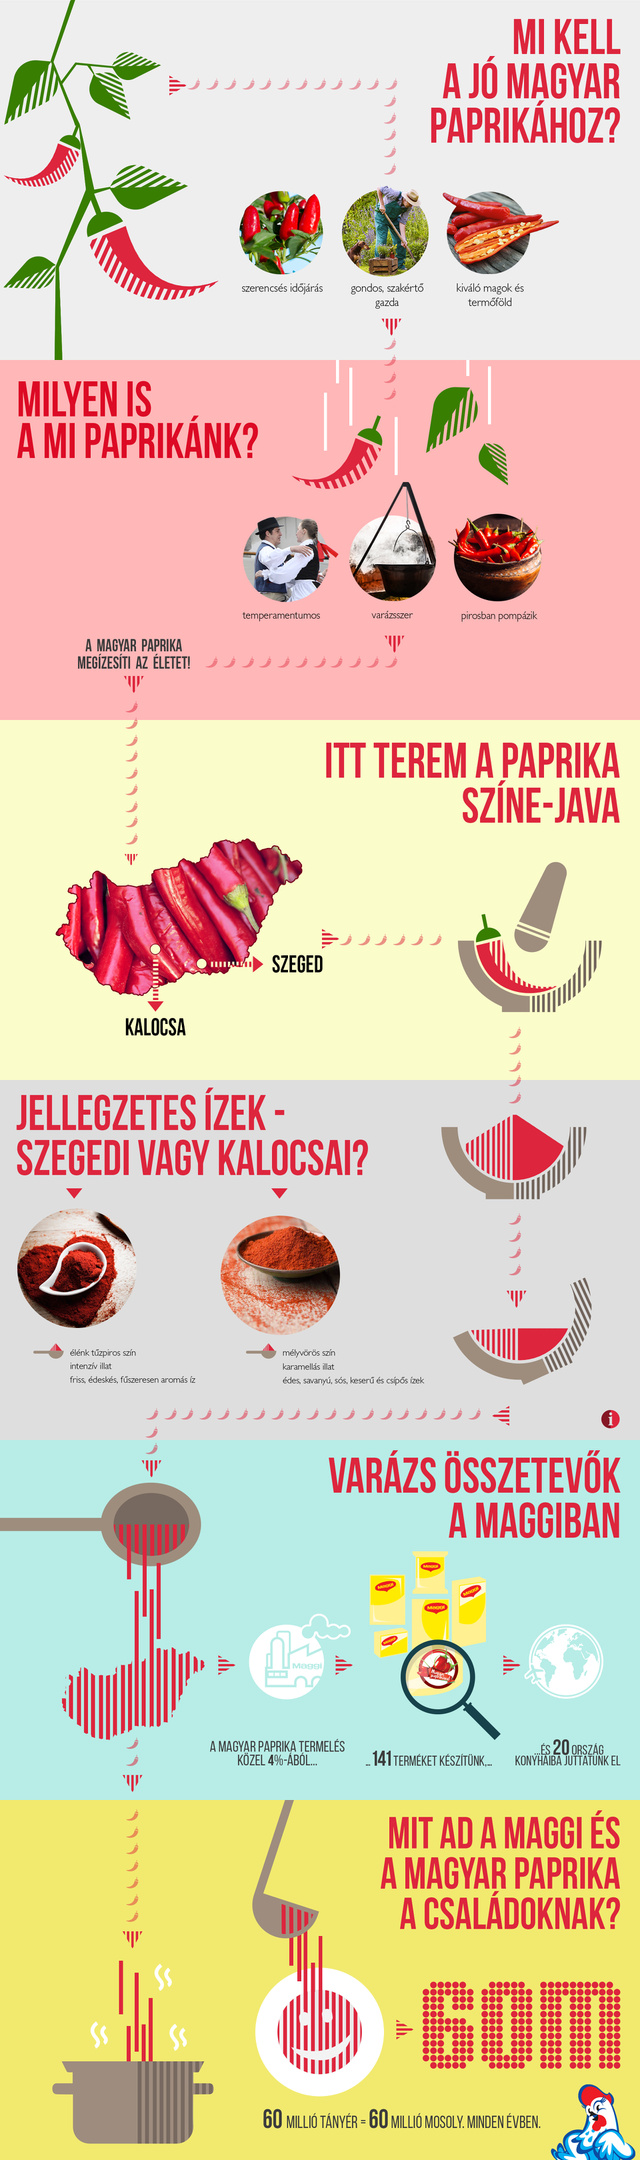 Magyar paprika Maggi infografika 201607